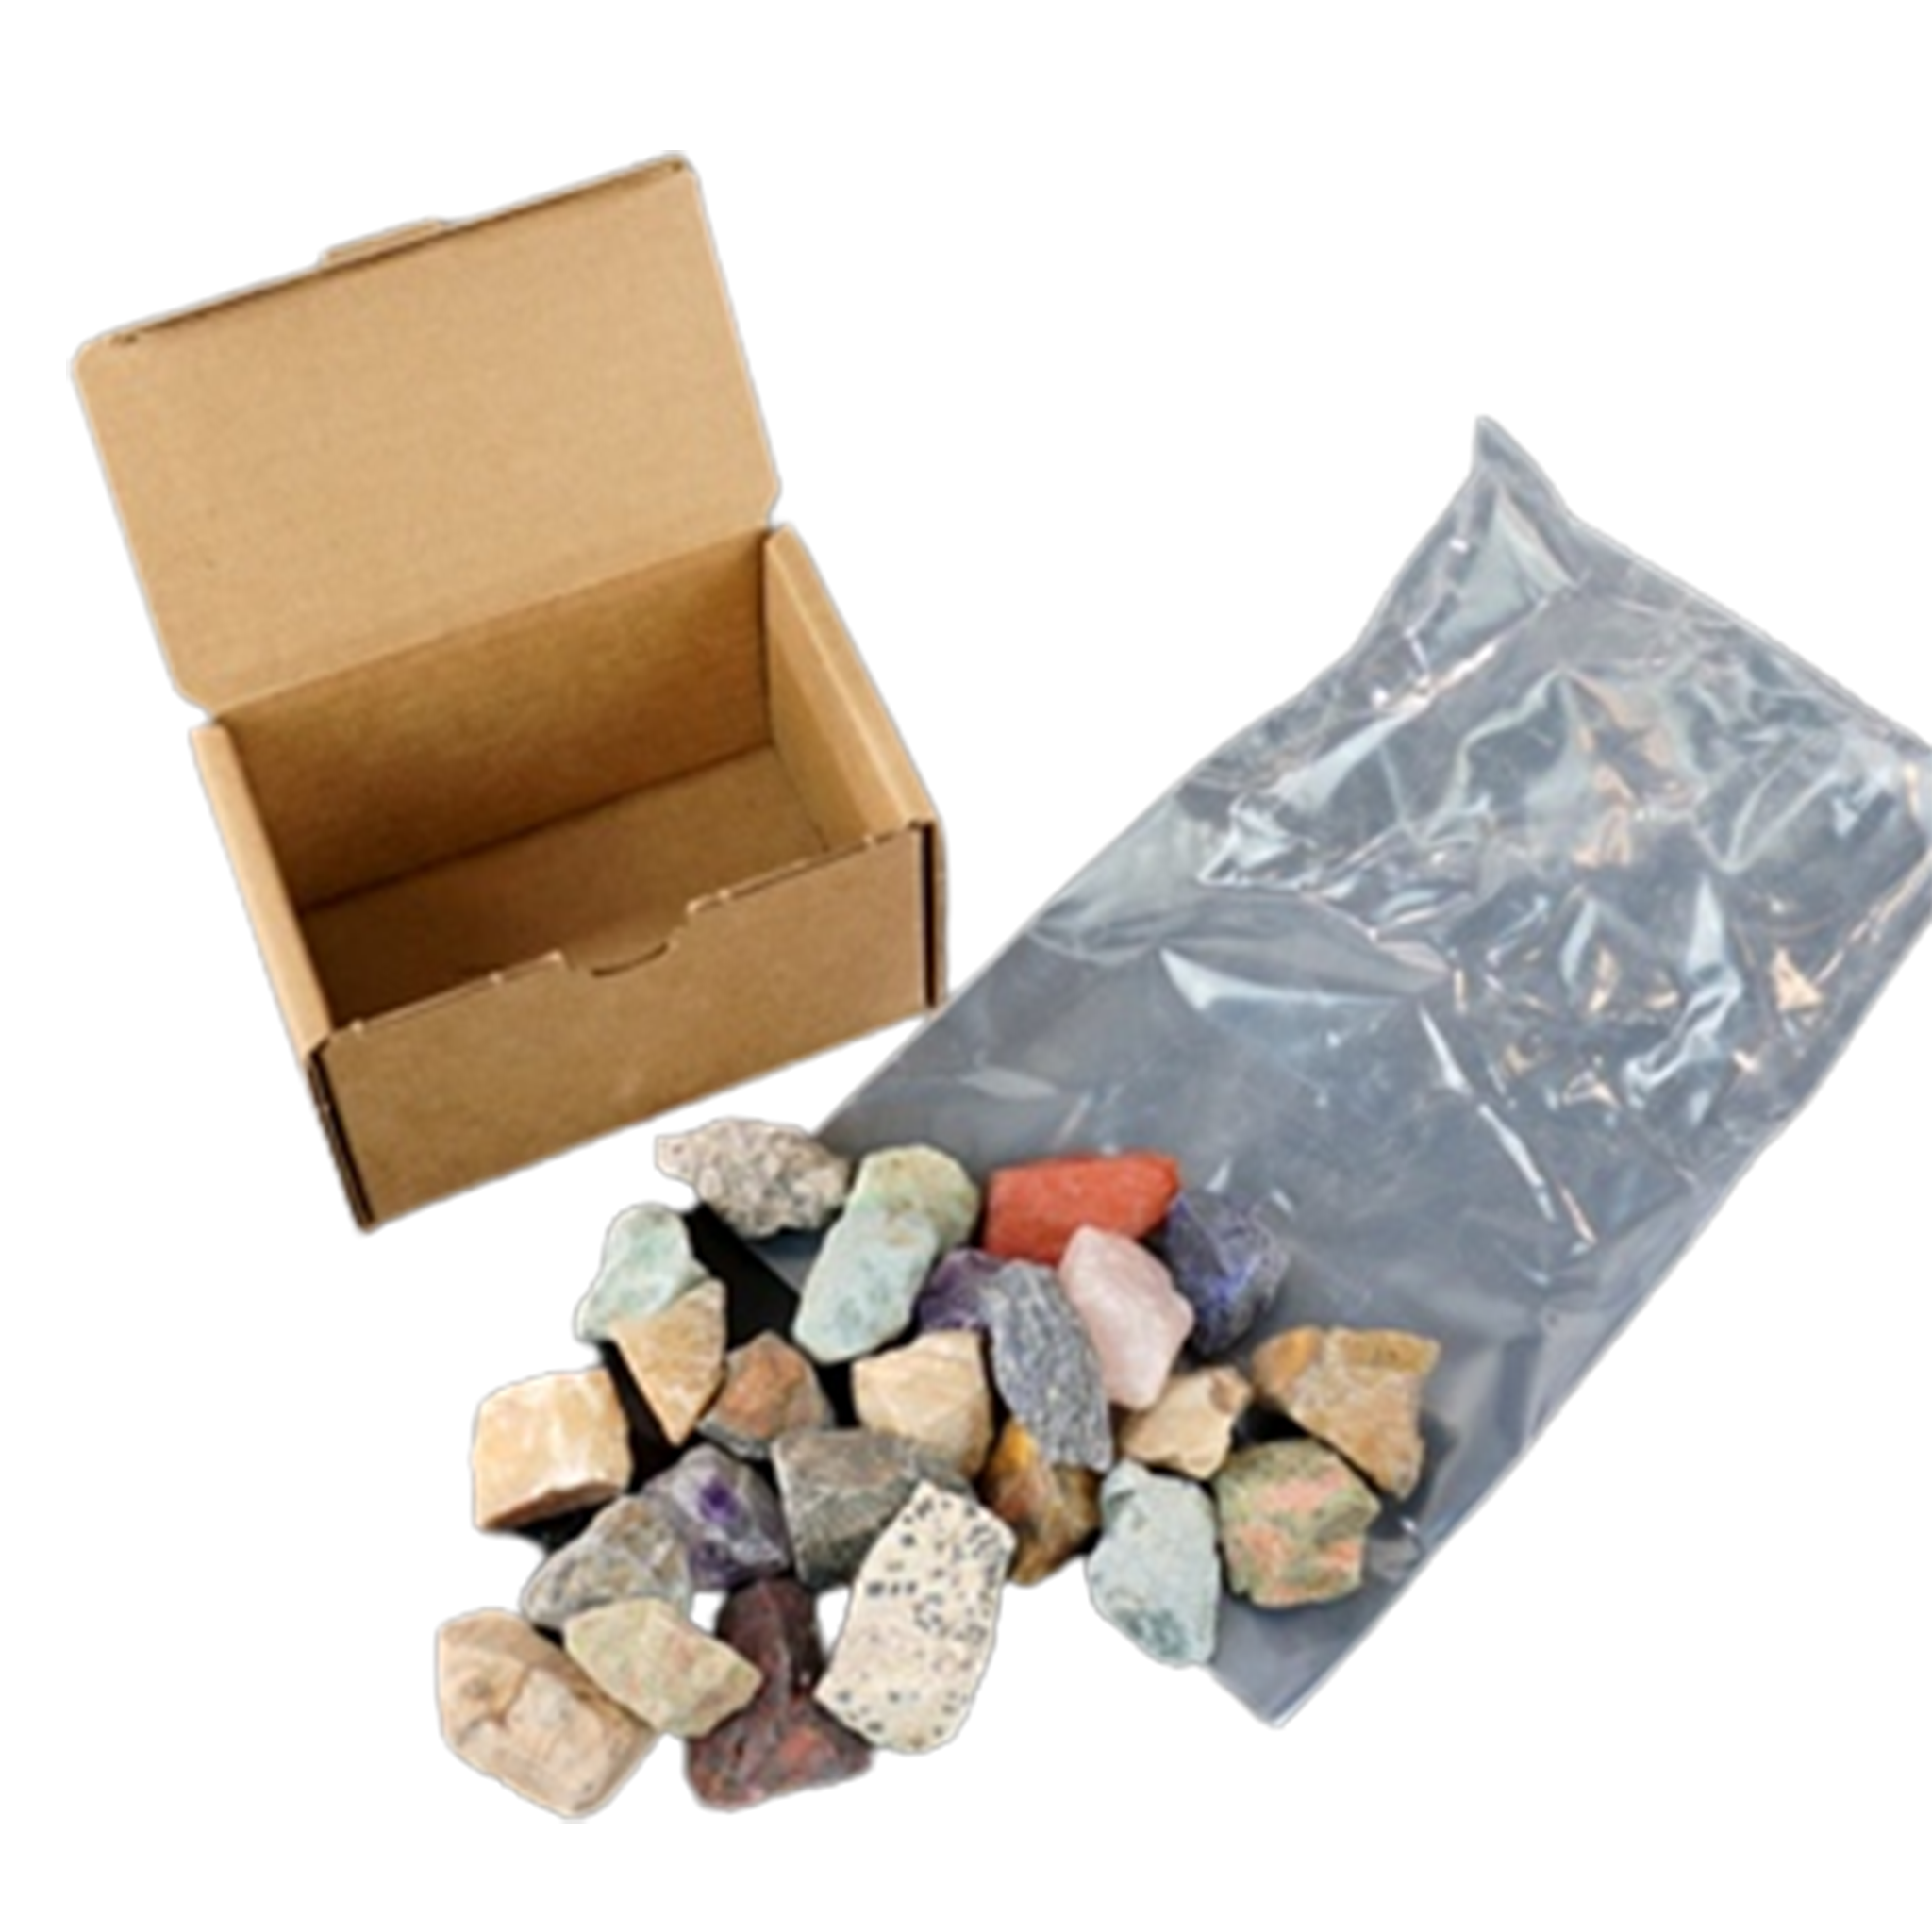 Lortone Rock Tumbling Kit, 3 lb. – Lakeside Gems Inc.